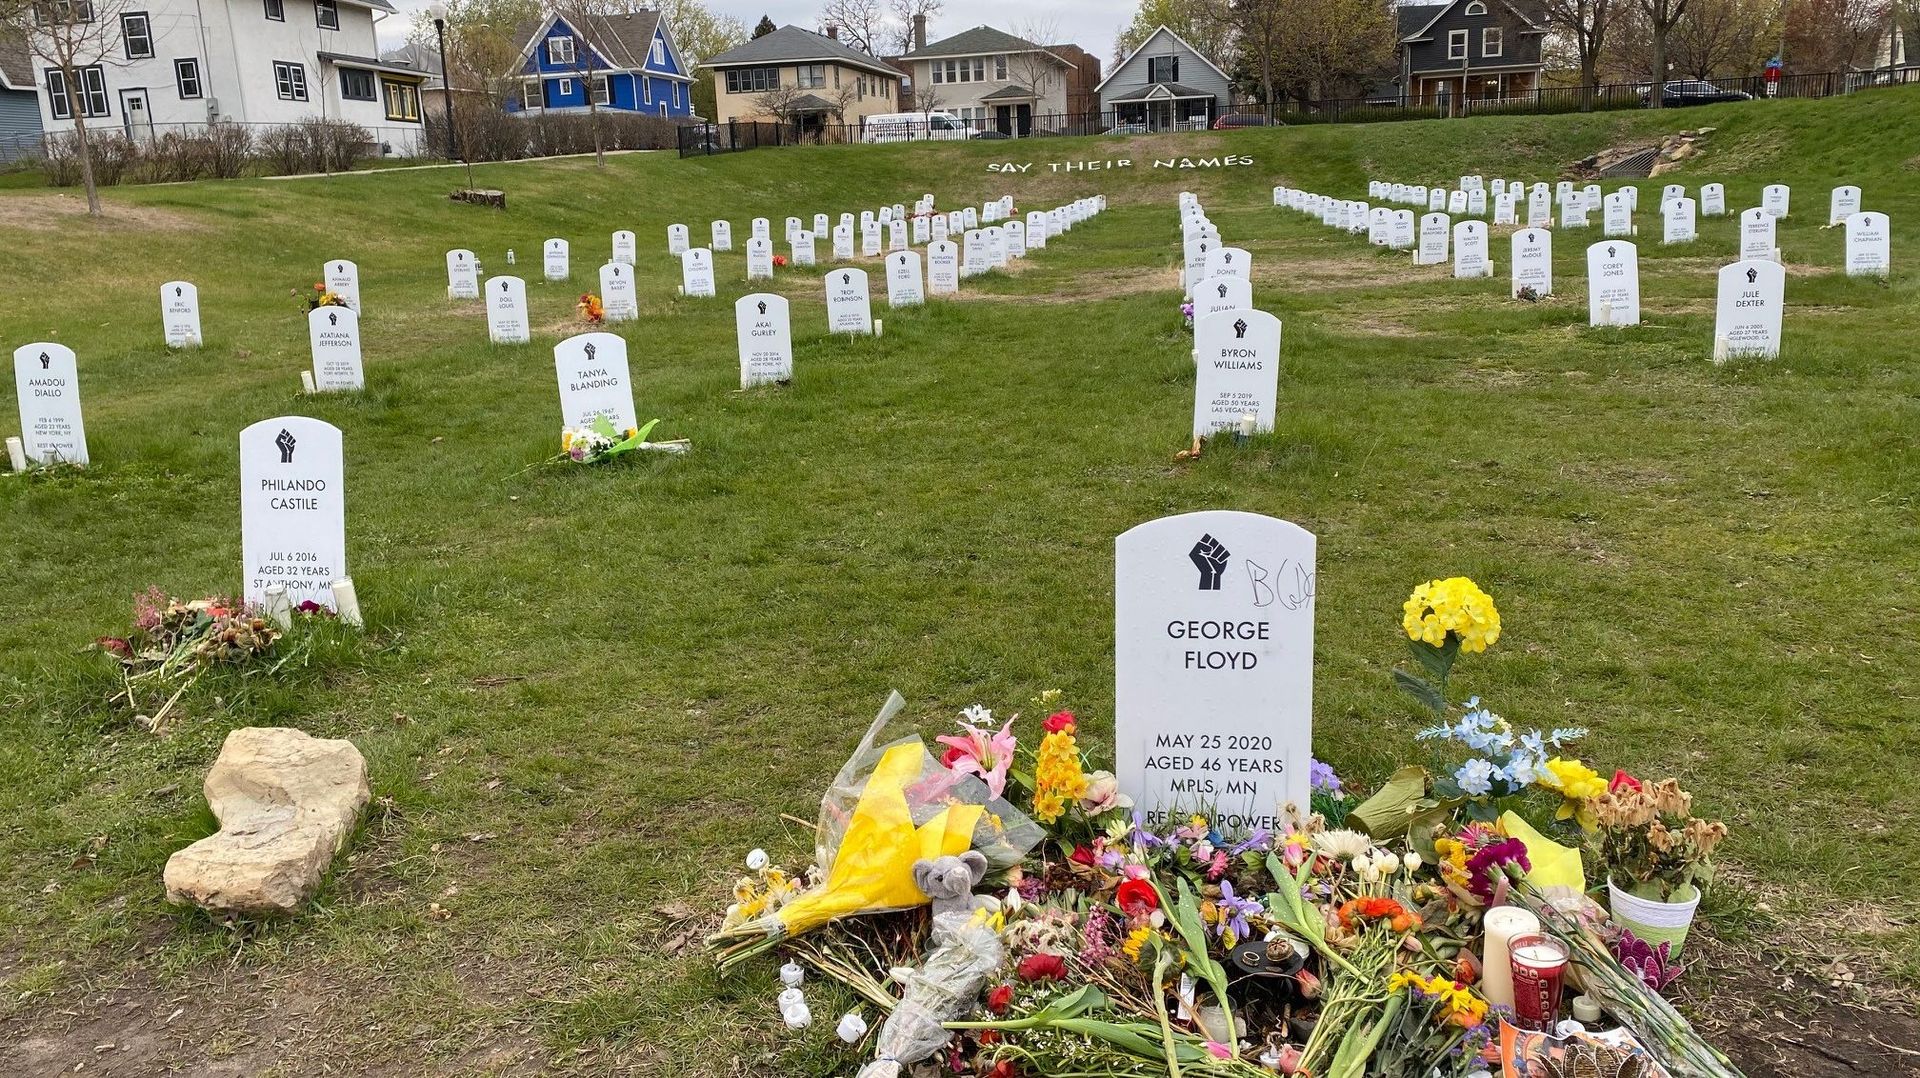 Le cimetière symbolique "Say their names" à Minneapolis